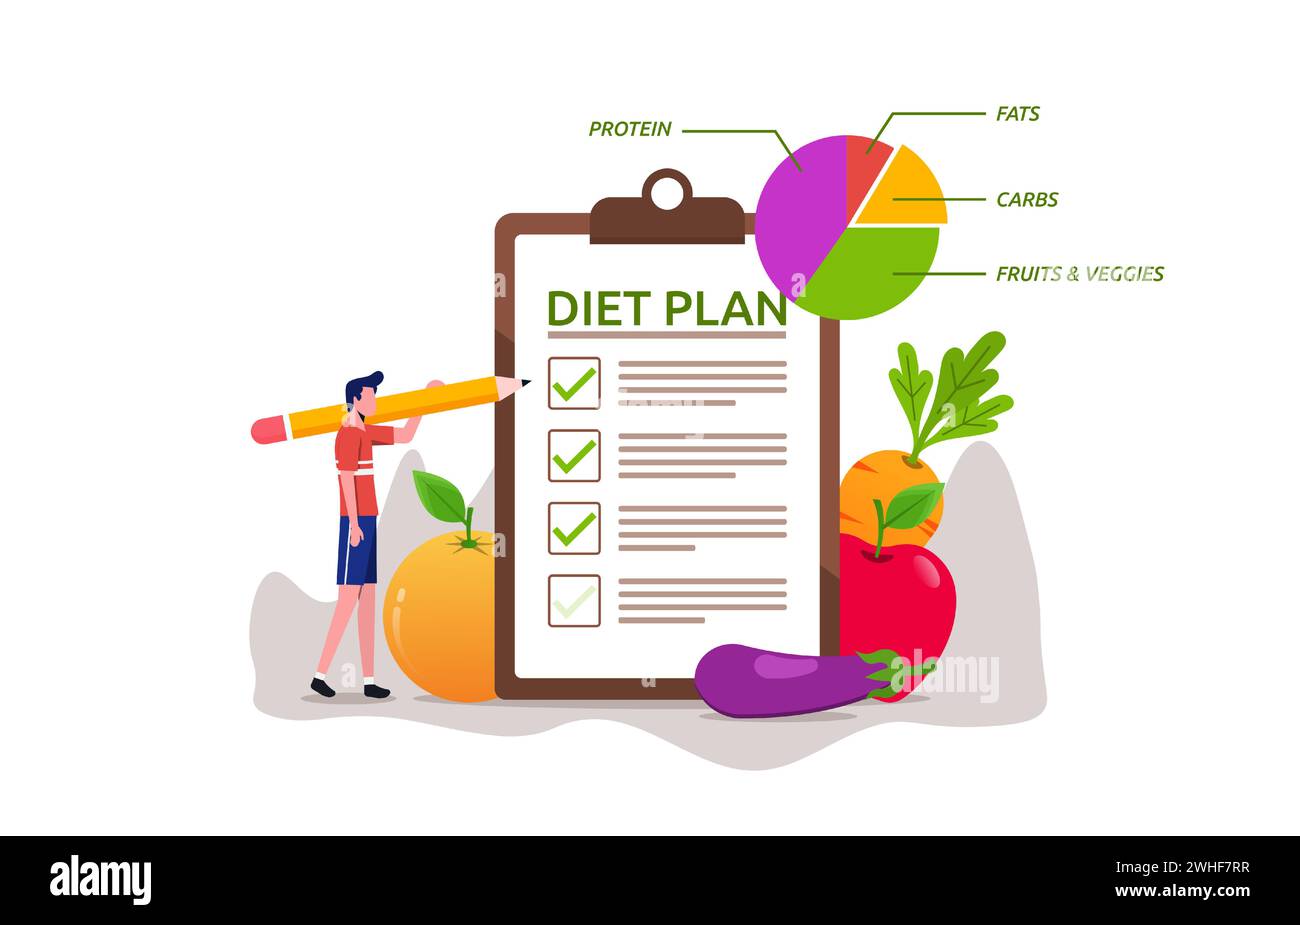 Gesunde Ernährung Ernährung Ernährung Planung für Körper und psychische Gesundheit. Ernährung Gewichtsverlust Diät, gesunde Lebensweise für das allgemeine Wohlbefinden Stock Vektor